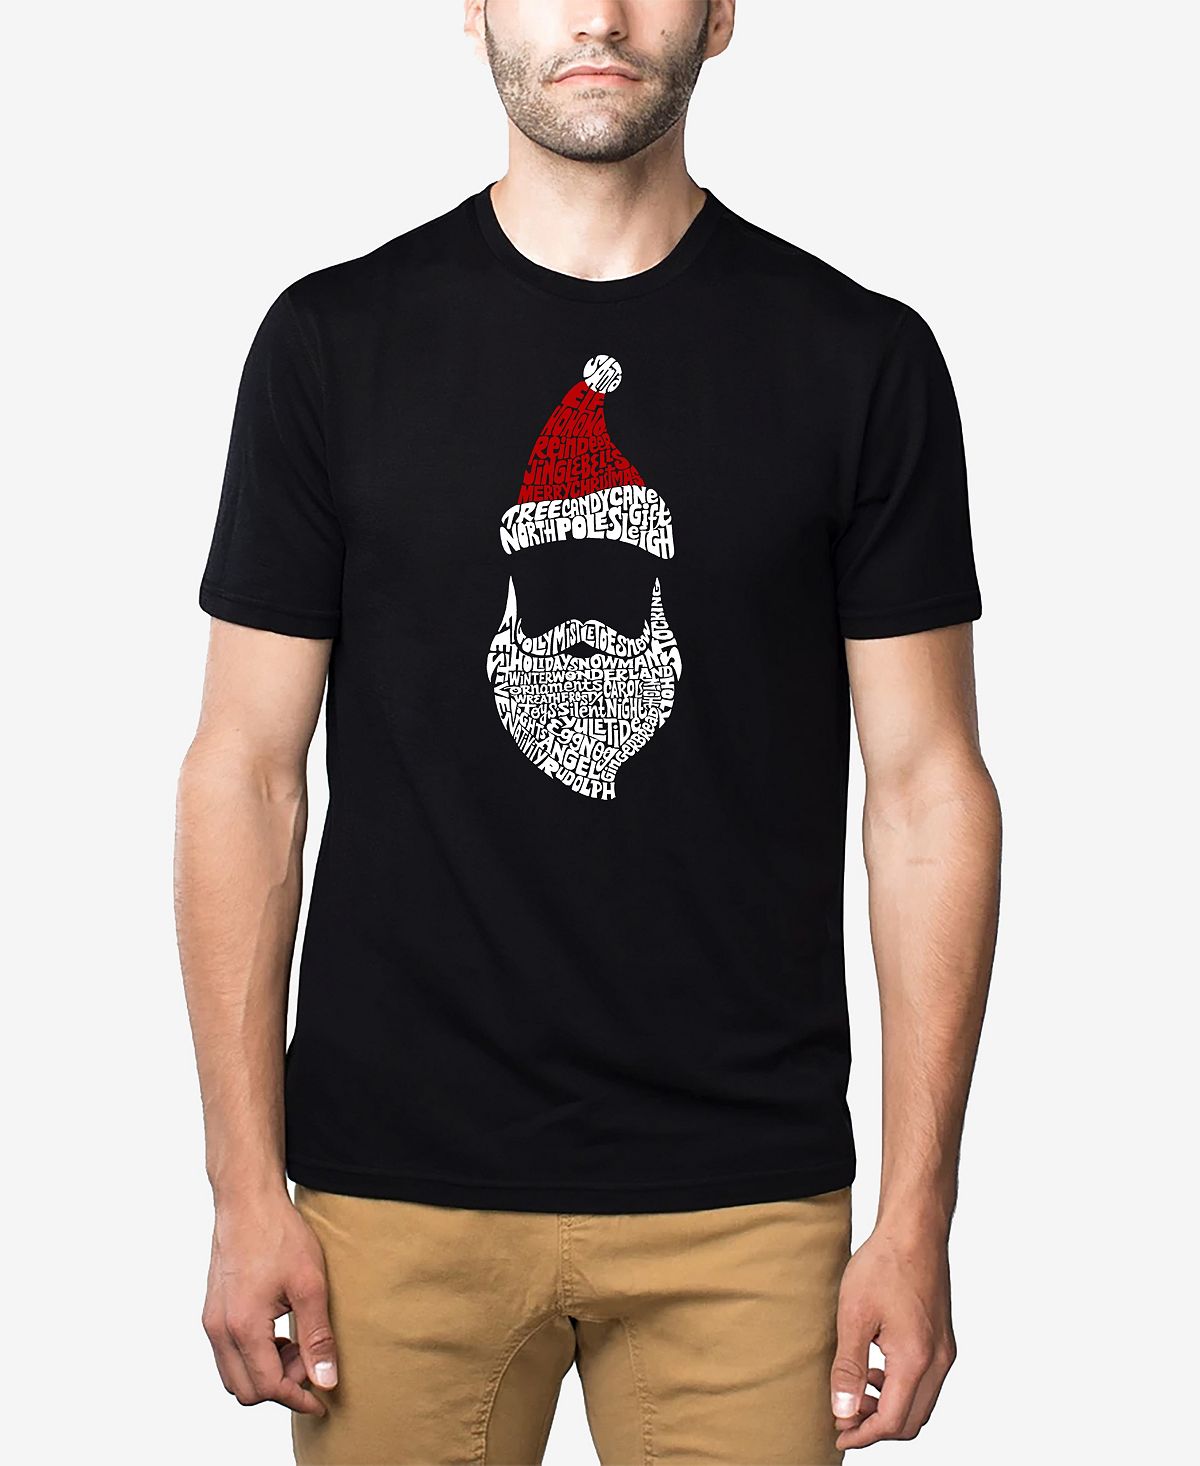 Мужская футболка premium blend santa claus word art LA Pop Art, черный рождественские женские носки забавные носки с изображением санта клауса рождественской елки для девочек рождественский подарок 2021